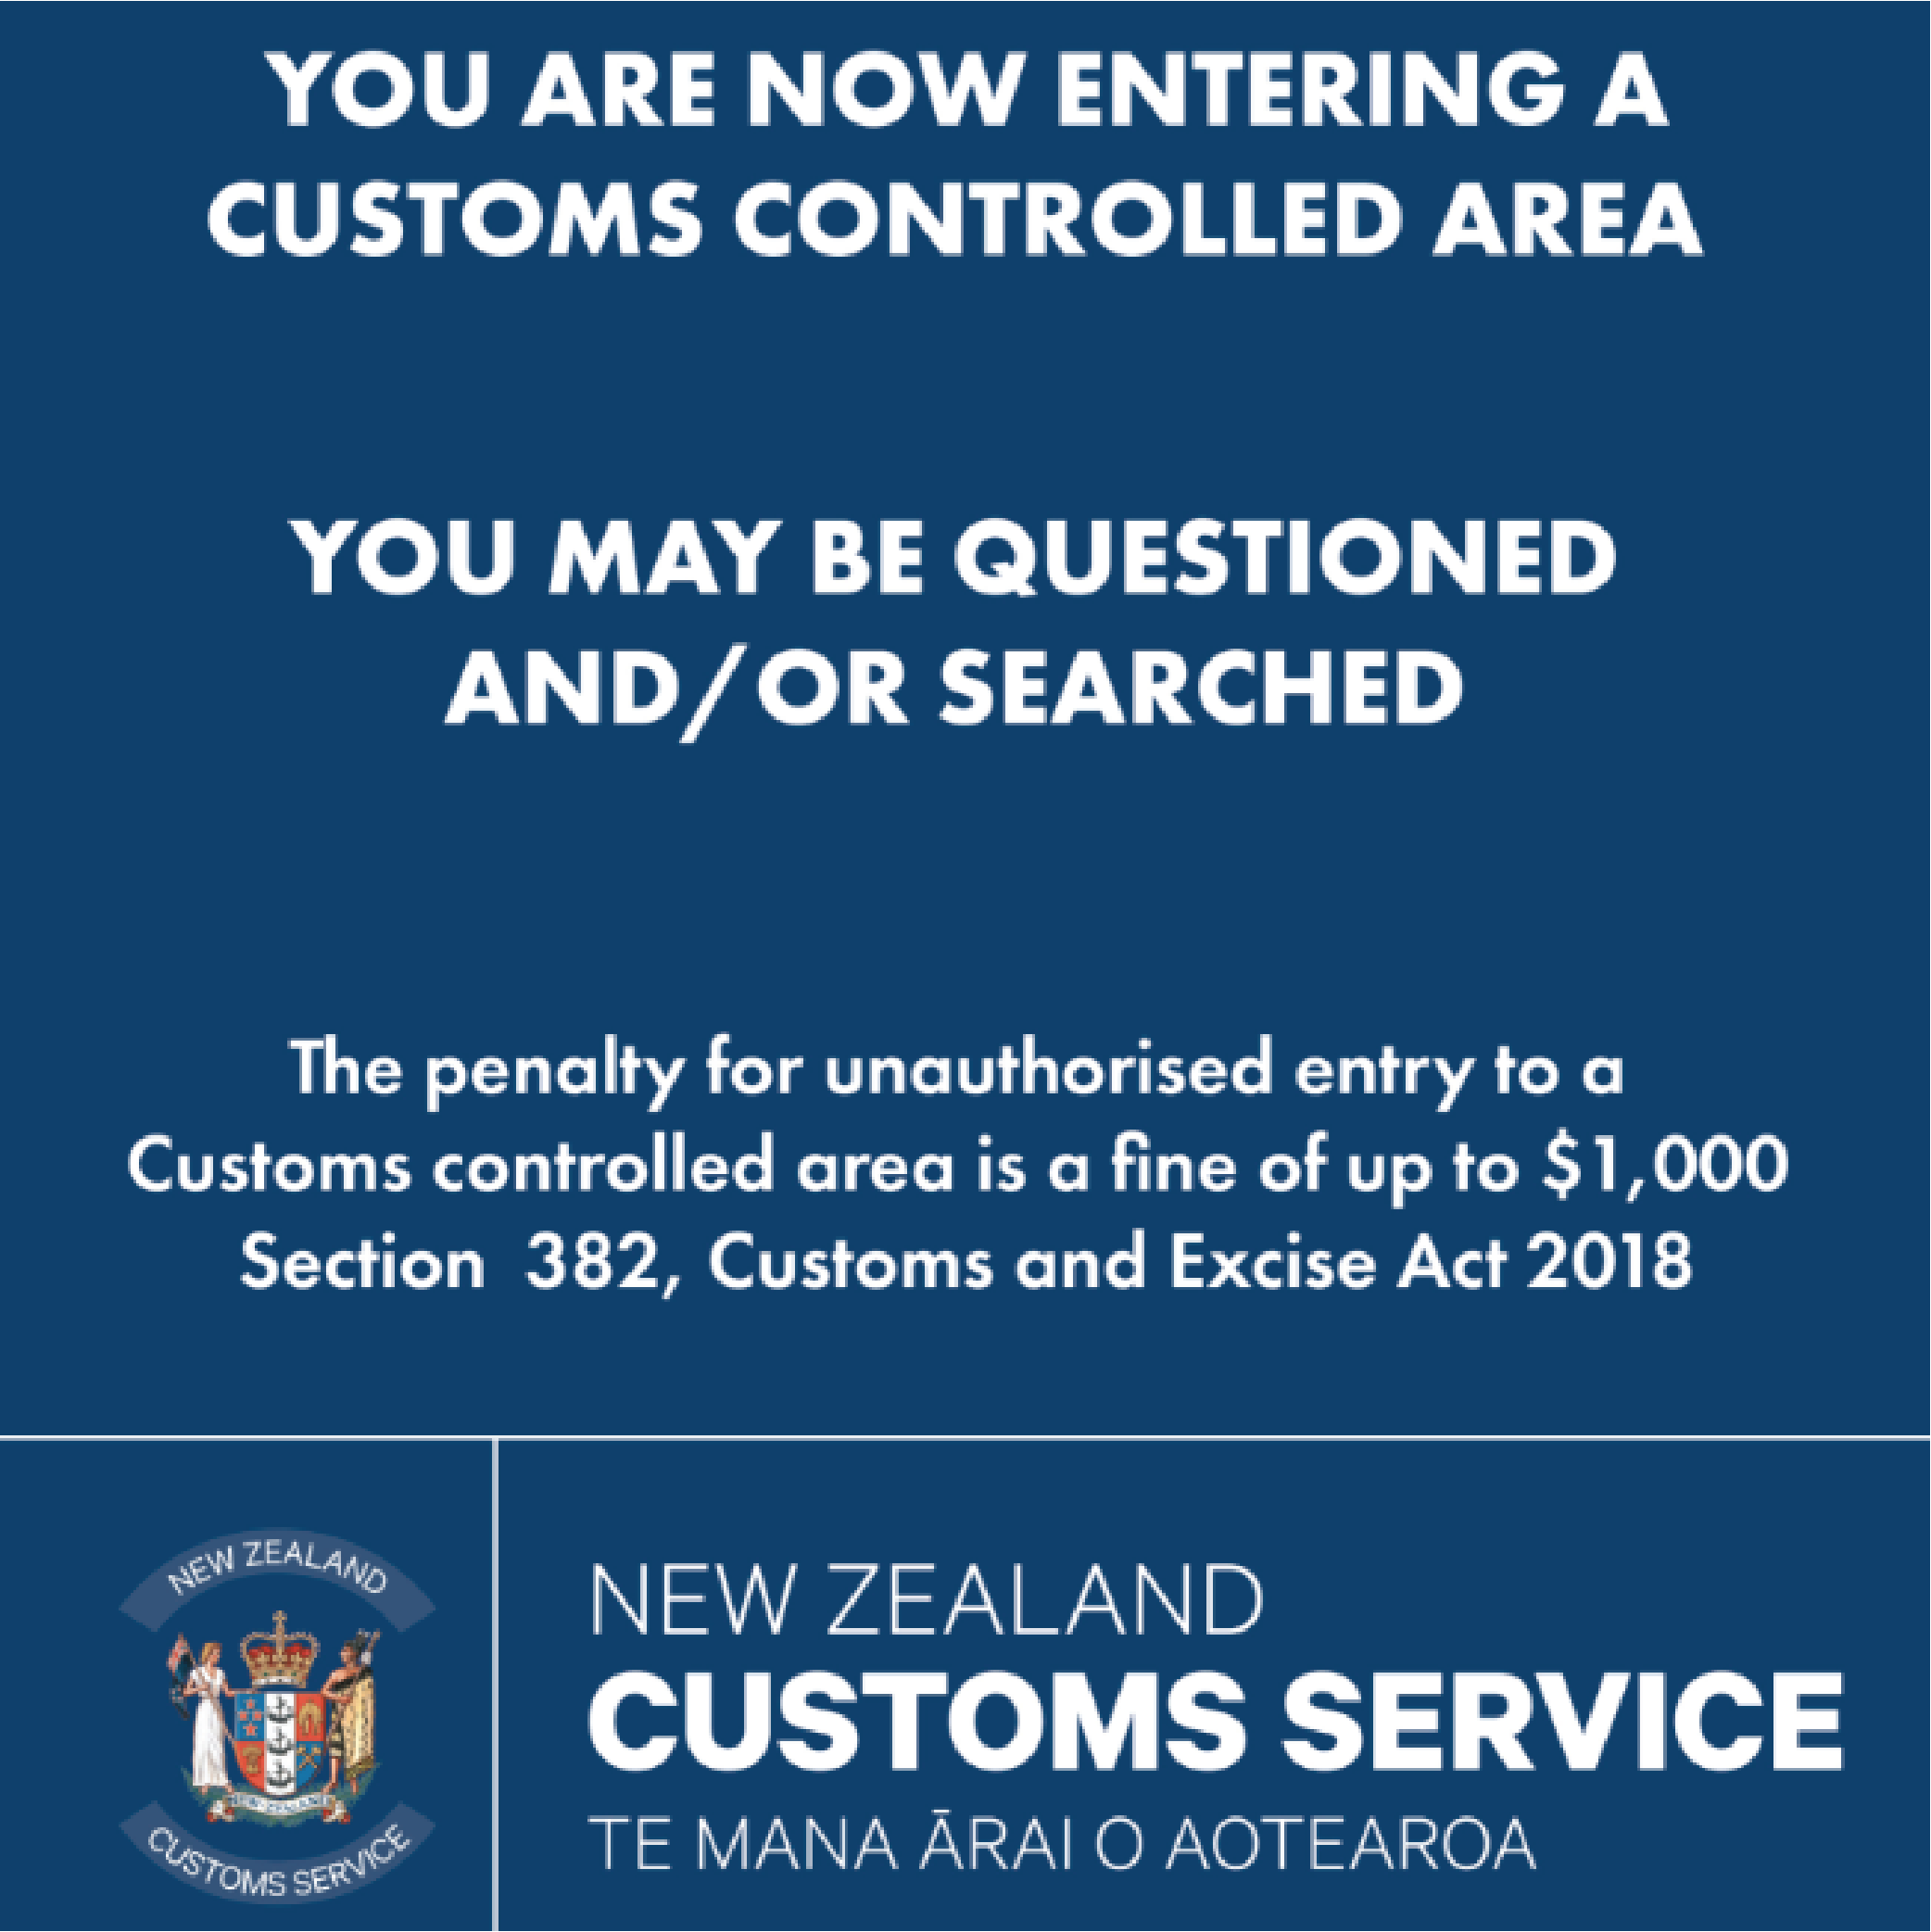 NZ Customs Service - Customs Controlled Area (CCA)